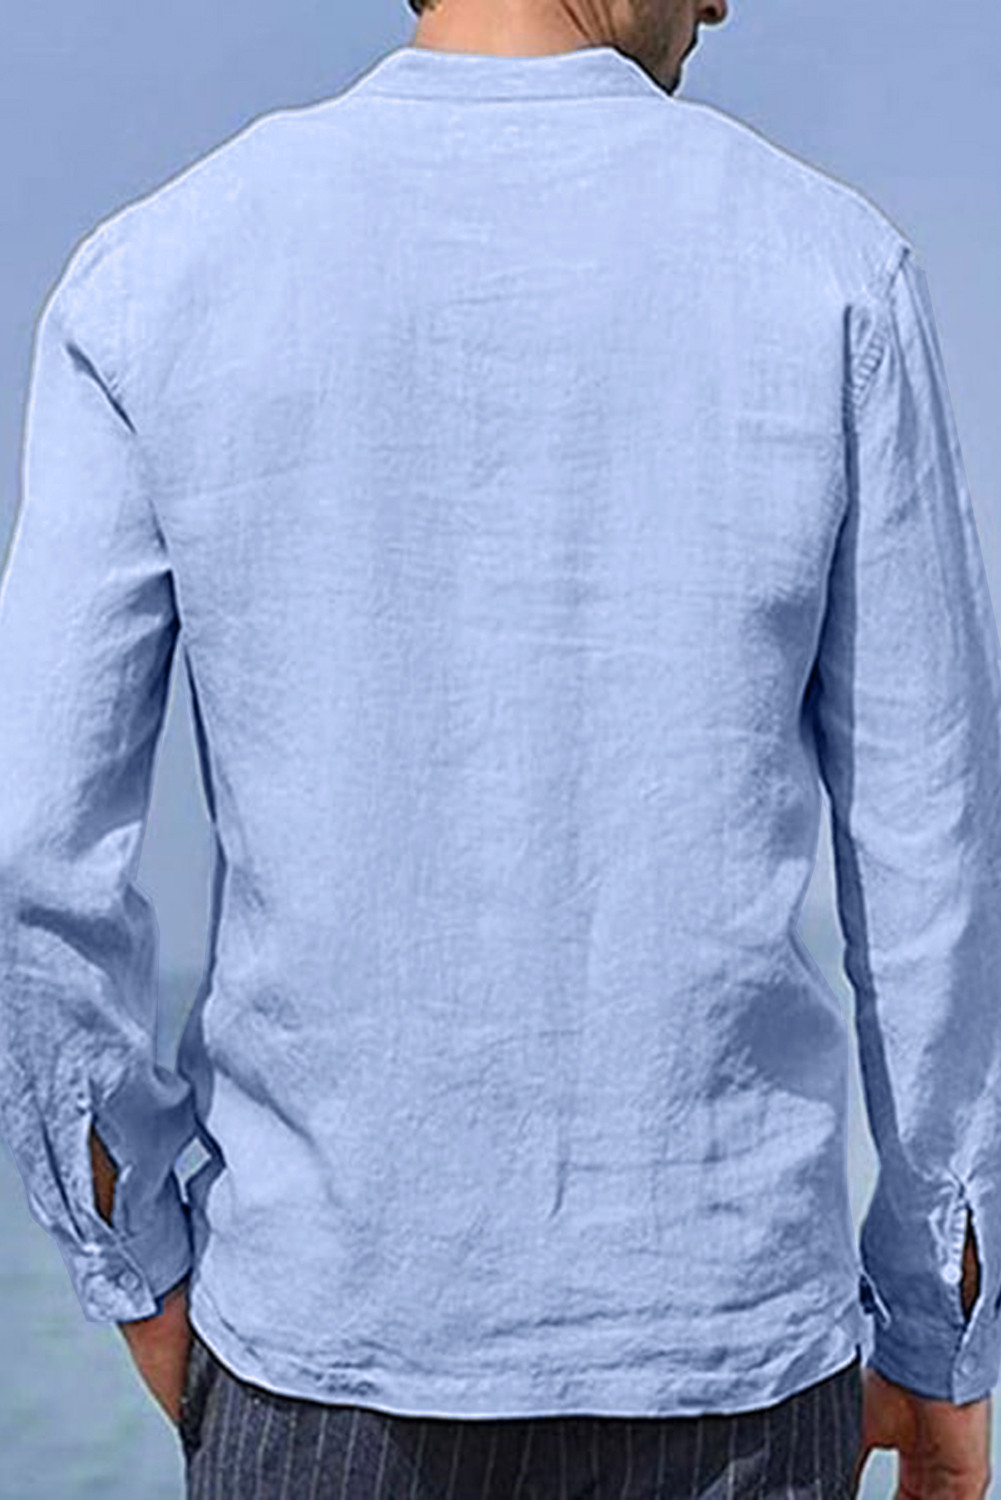 天蓝色半纽扣长袖男式休闲口袋套头衬衫 MC255134